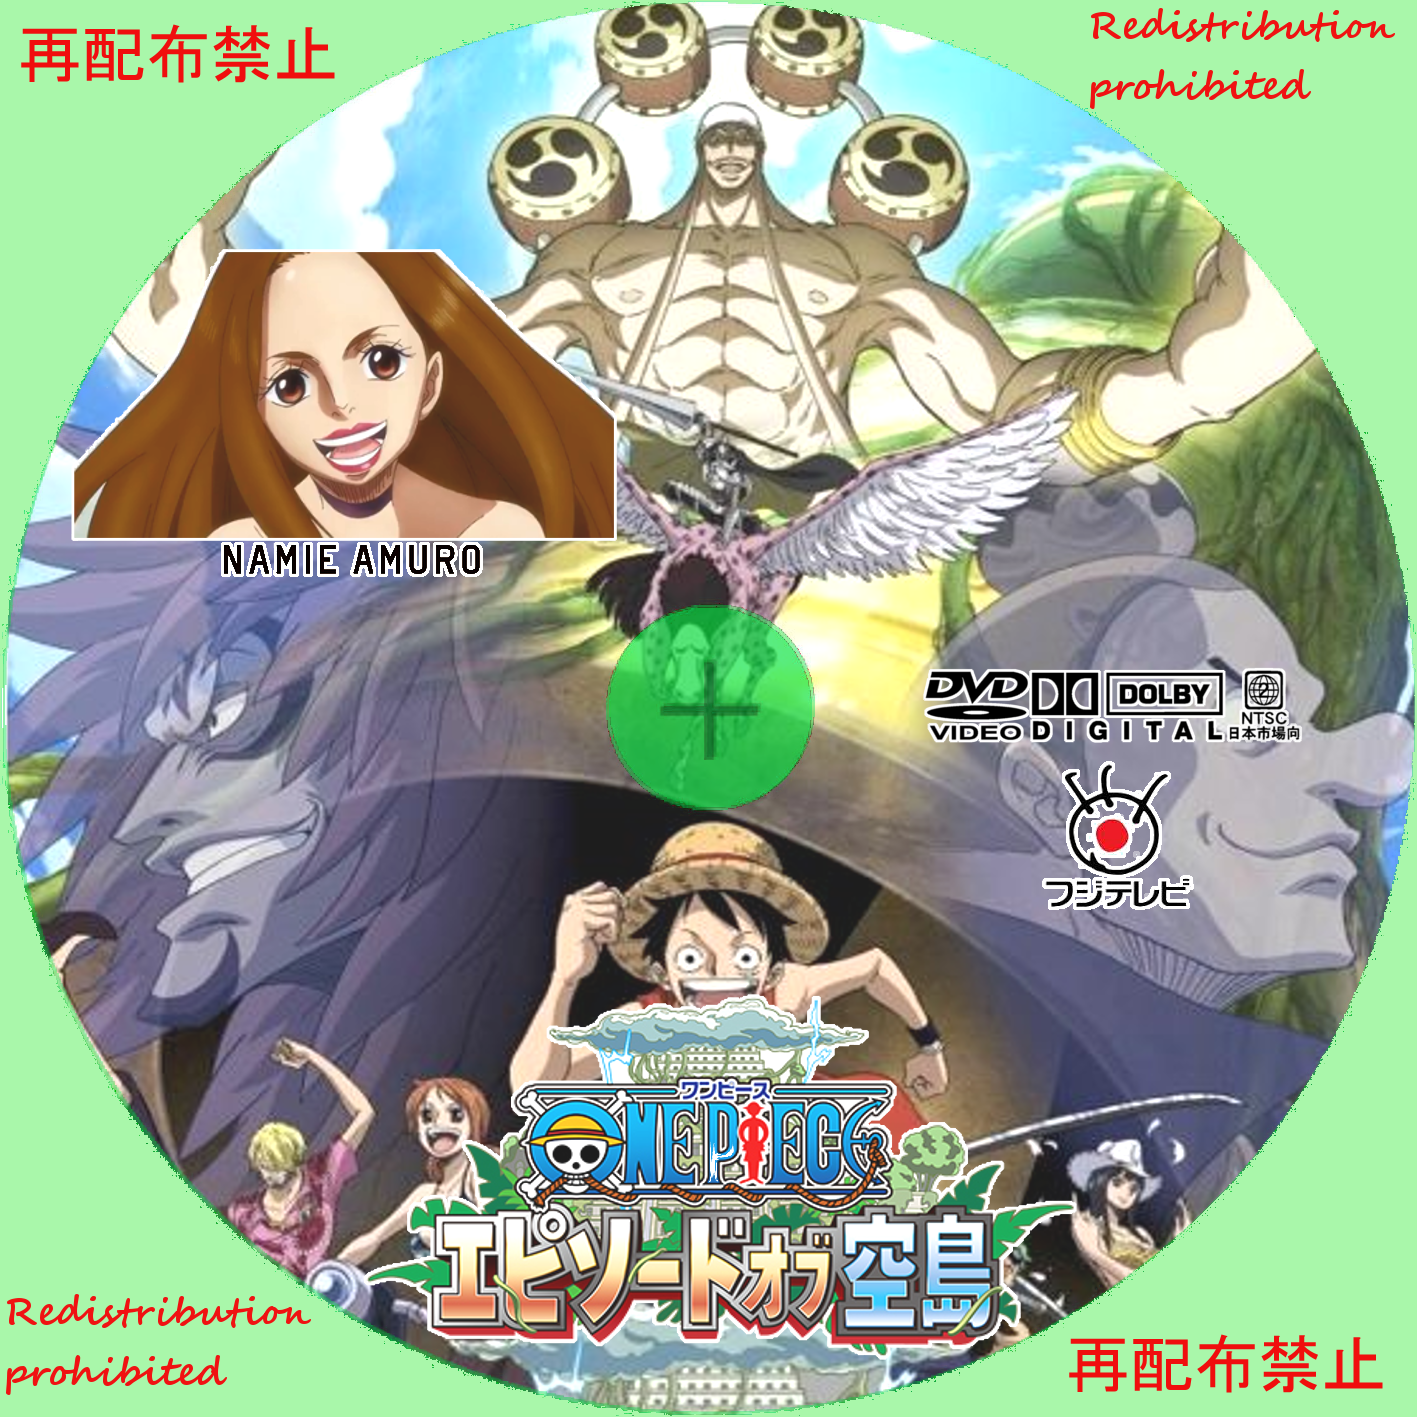 アニメ One Piece エピソードオブ空島 Cd Dvd カスタムラベル